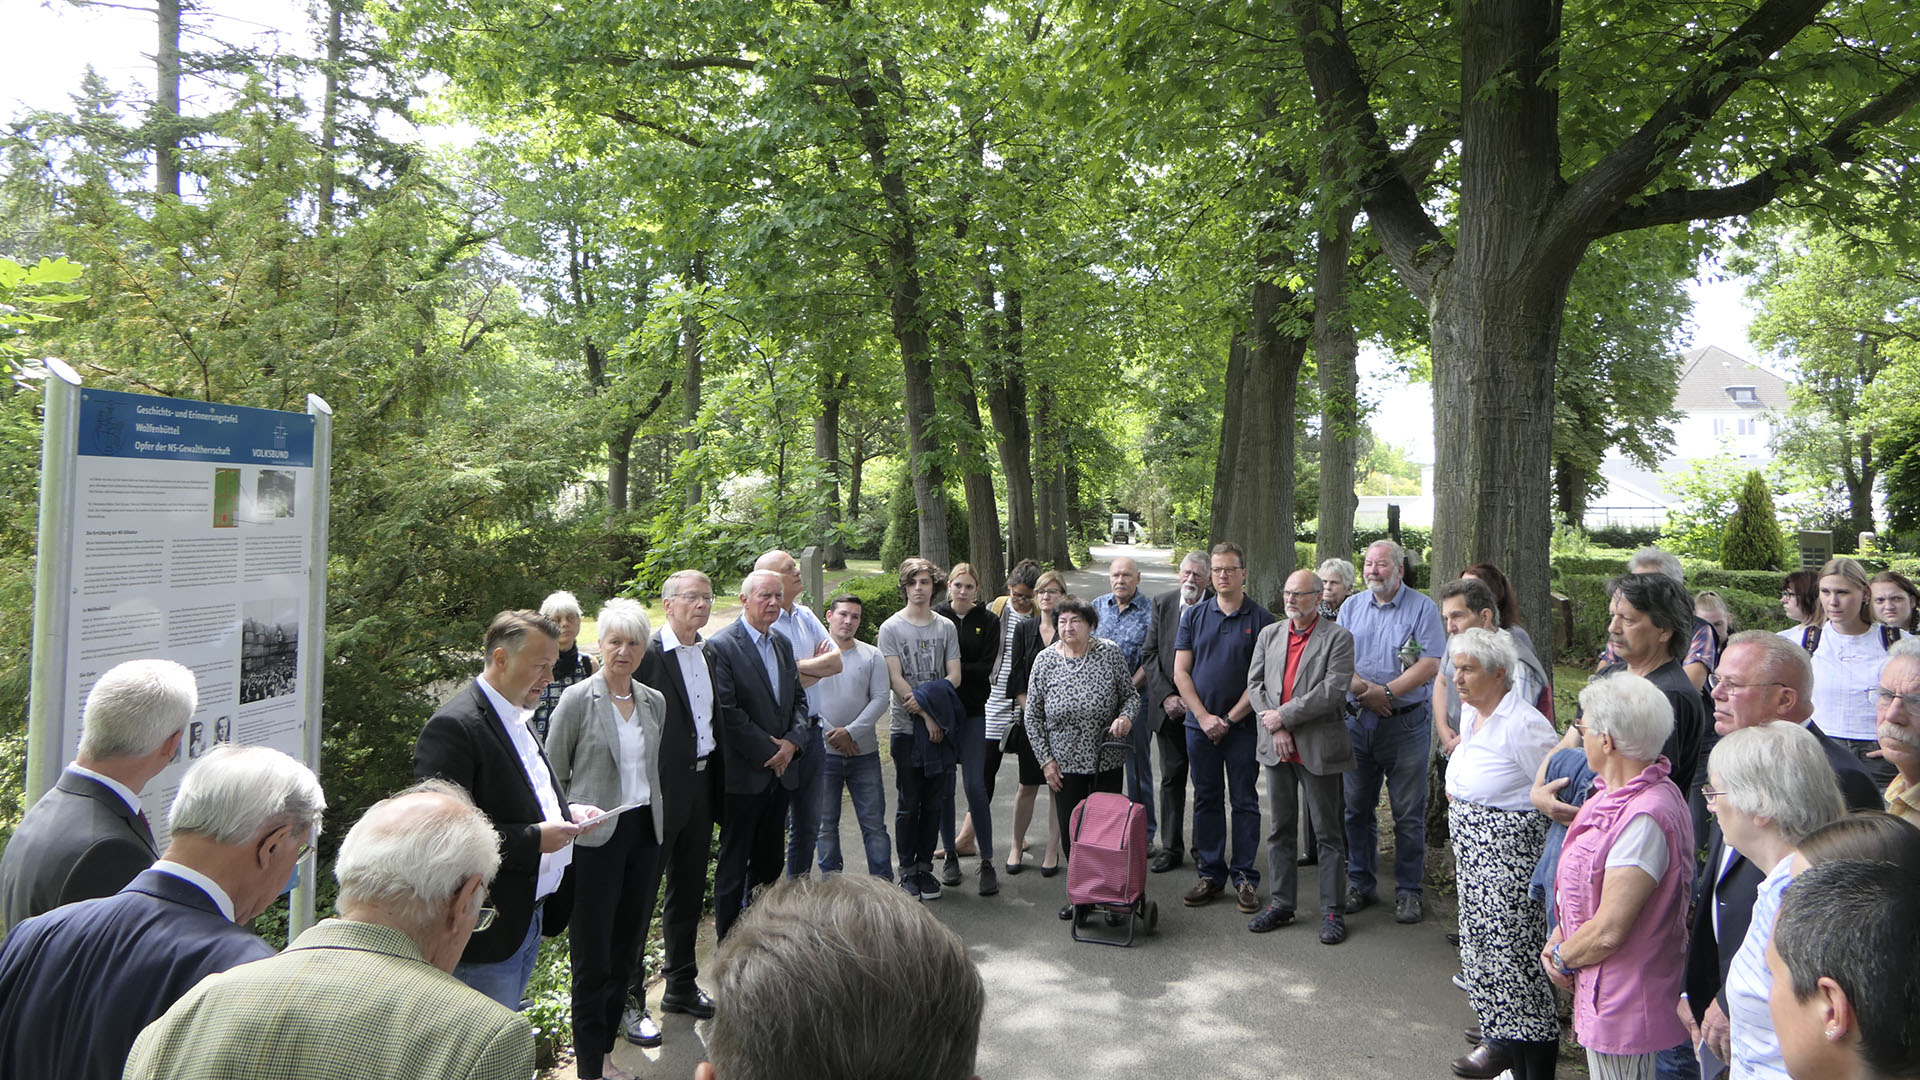 Auf dem Friedhof stehen viele Menschen rund um eine große Informationstafel, vor der ein Mann spricht. Es ist die Geschichts- und Erinnerungstafel Wolfenbüttel: Opfer der NS-Gewaltherrschaft